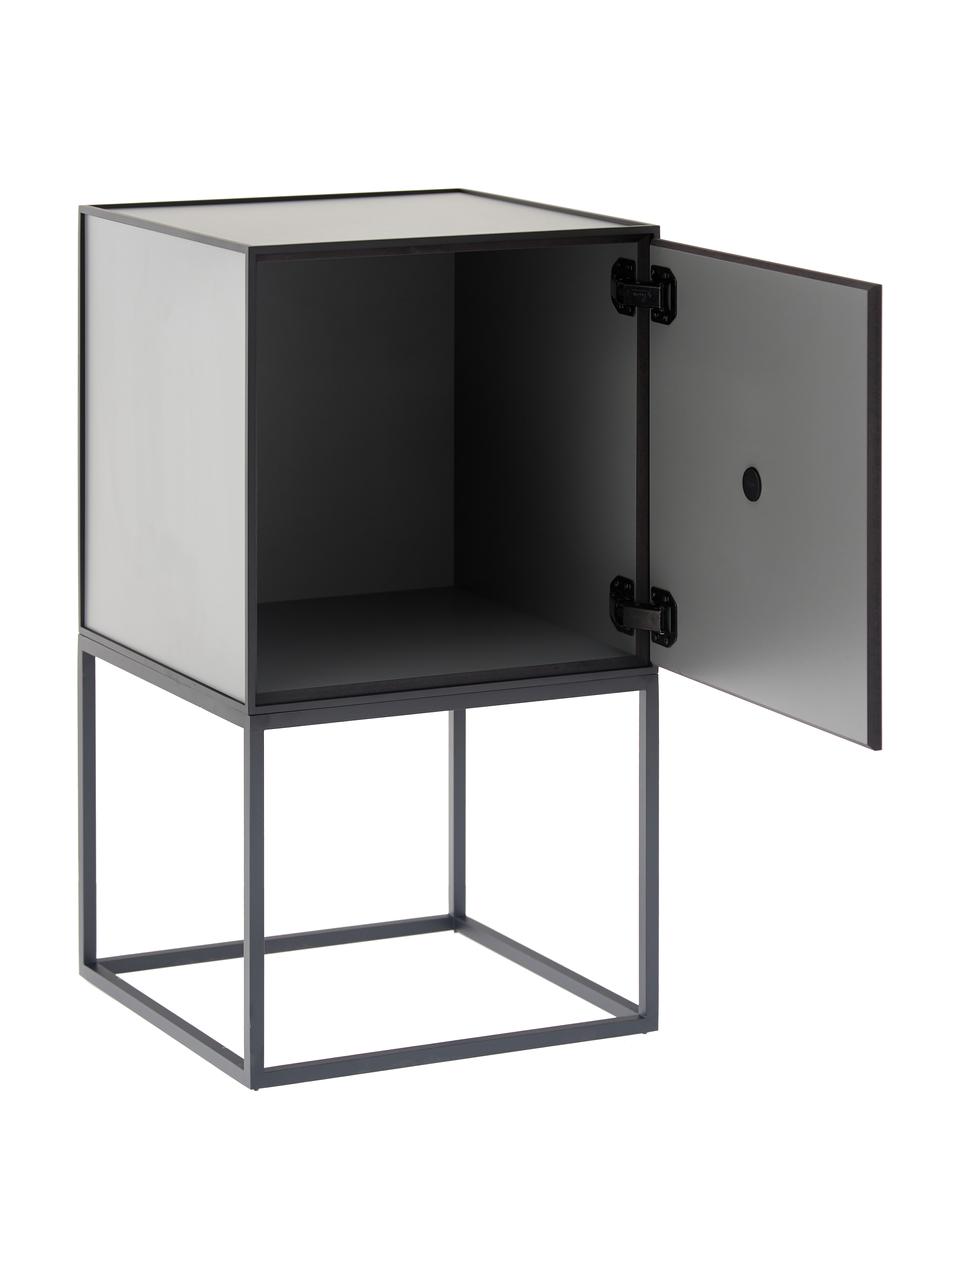 Grijs design nachtkastje Frame, Frame en omlijsting: zwart. Kast: donkergrijs, B 35 x H 63 cm